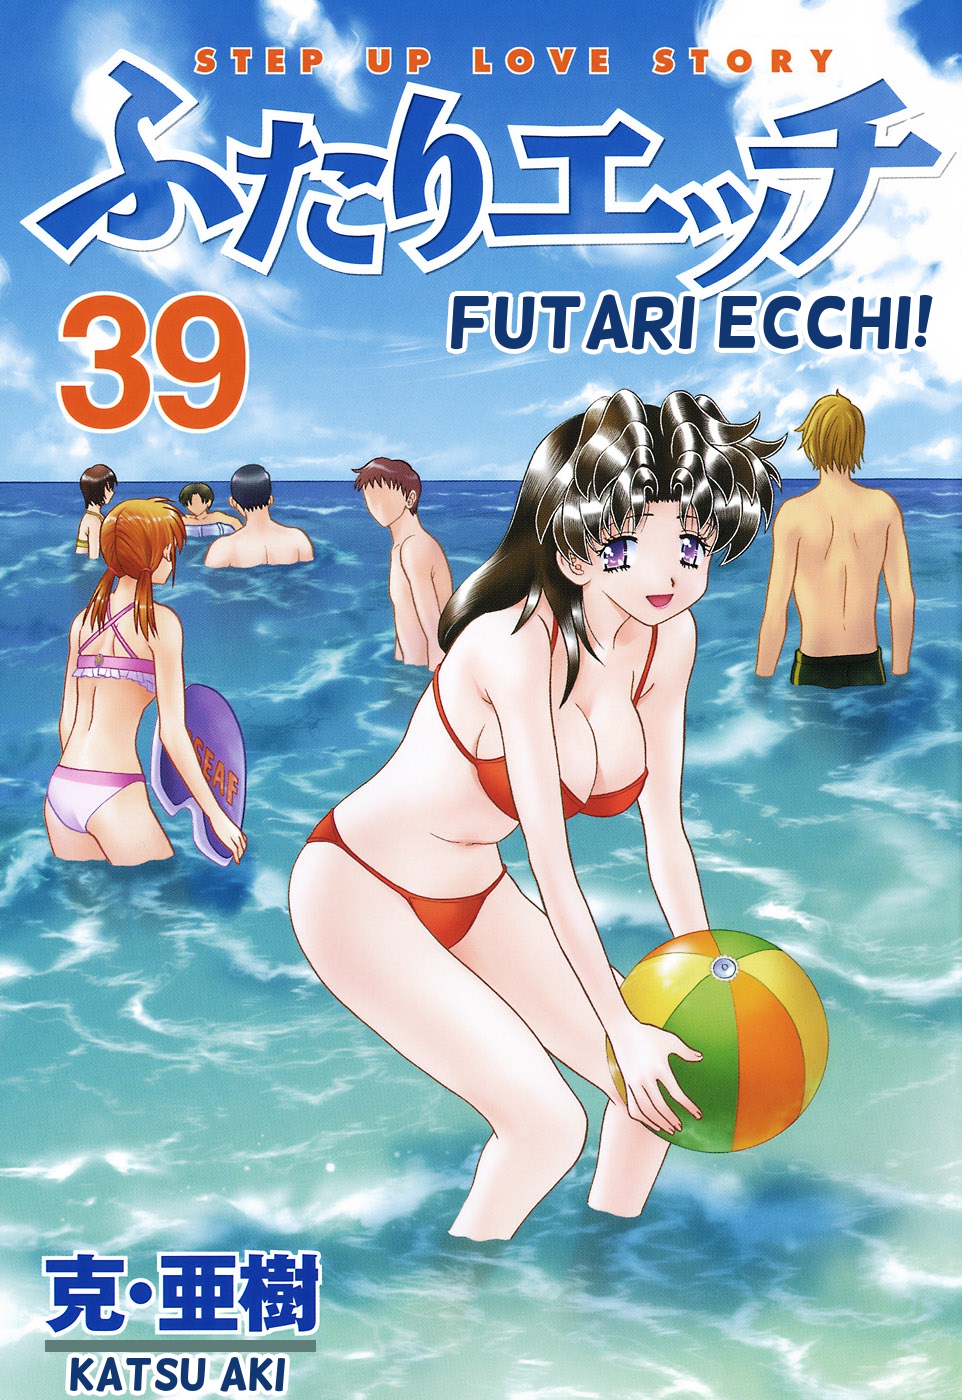 Futari Ecchi Vol. 39 Ch. 366 Rika's First Company Trip